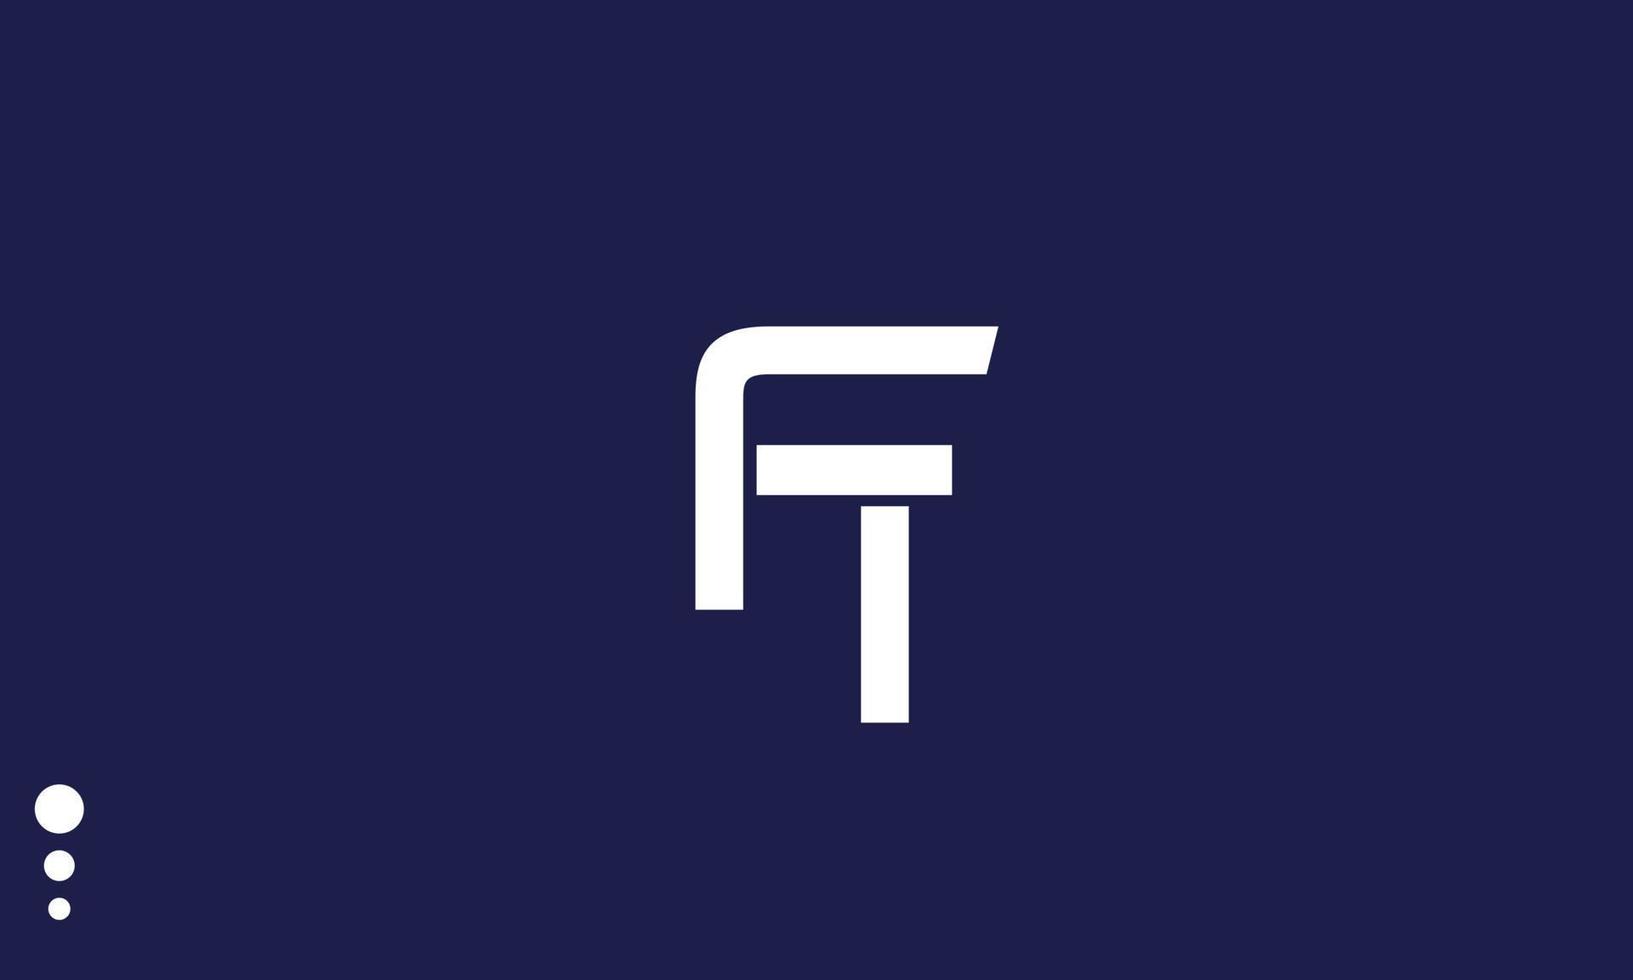 letras do alfabeto iniciais monograma logotipo ft, tf, f e t vetor